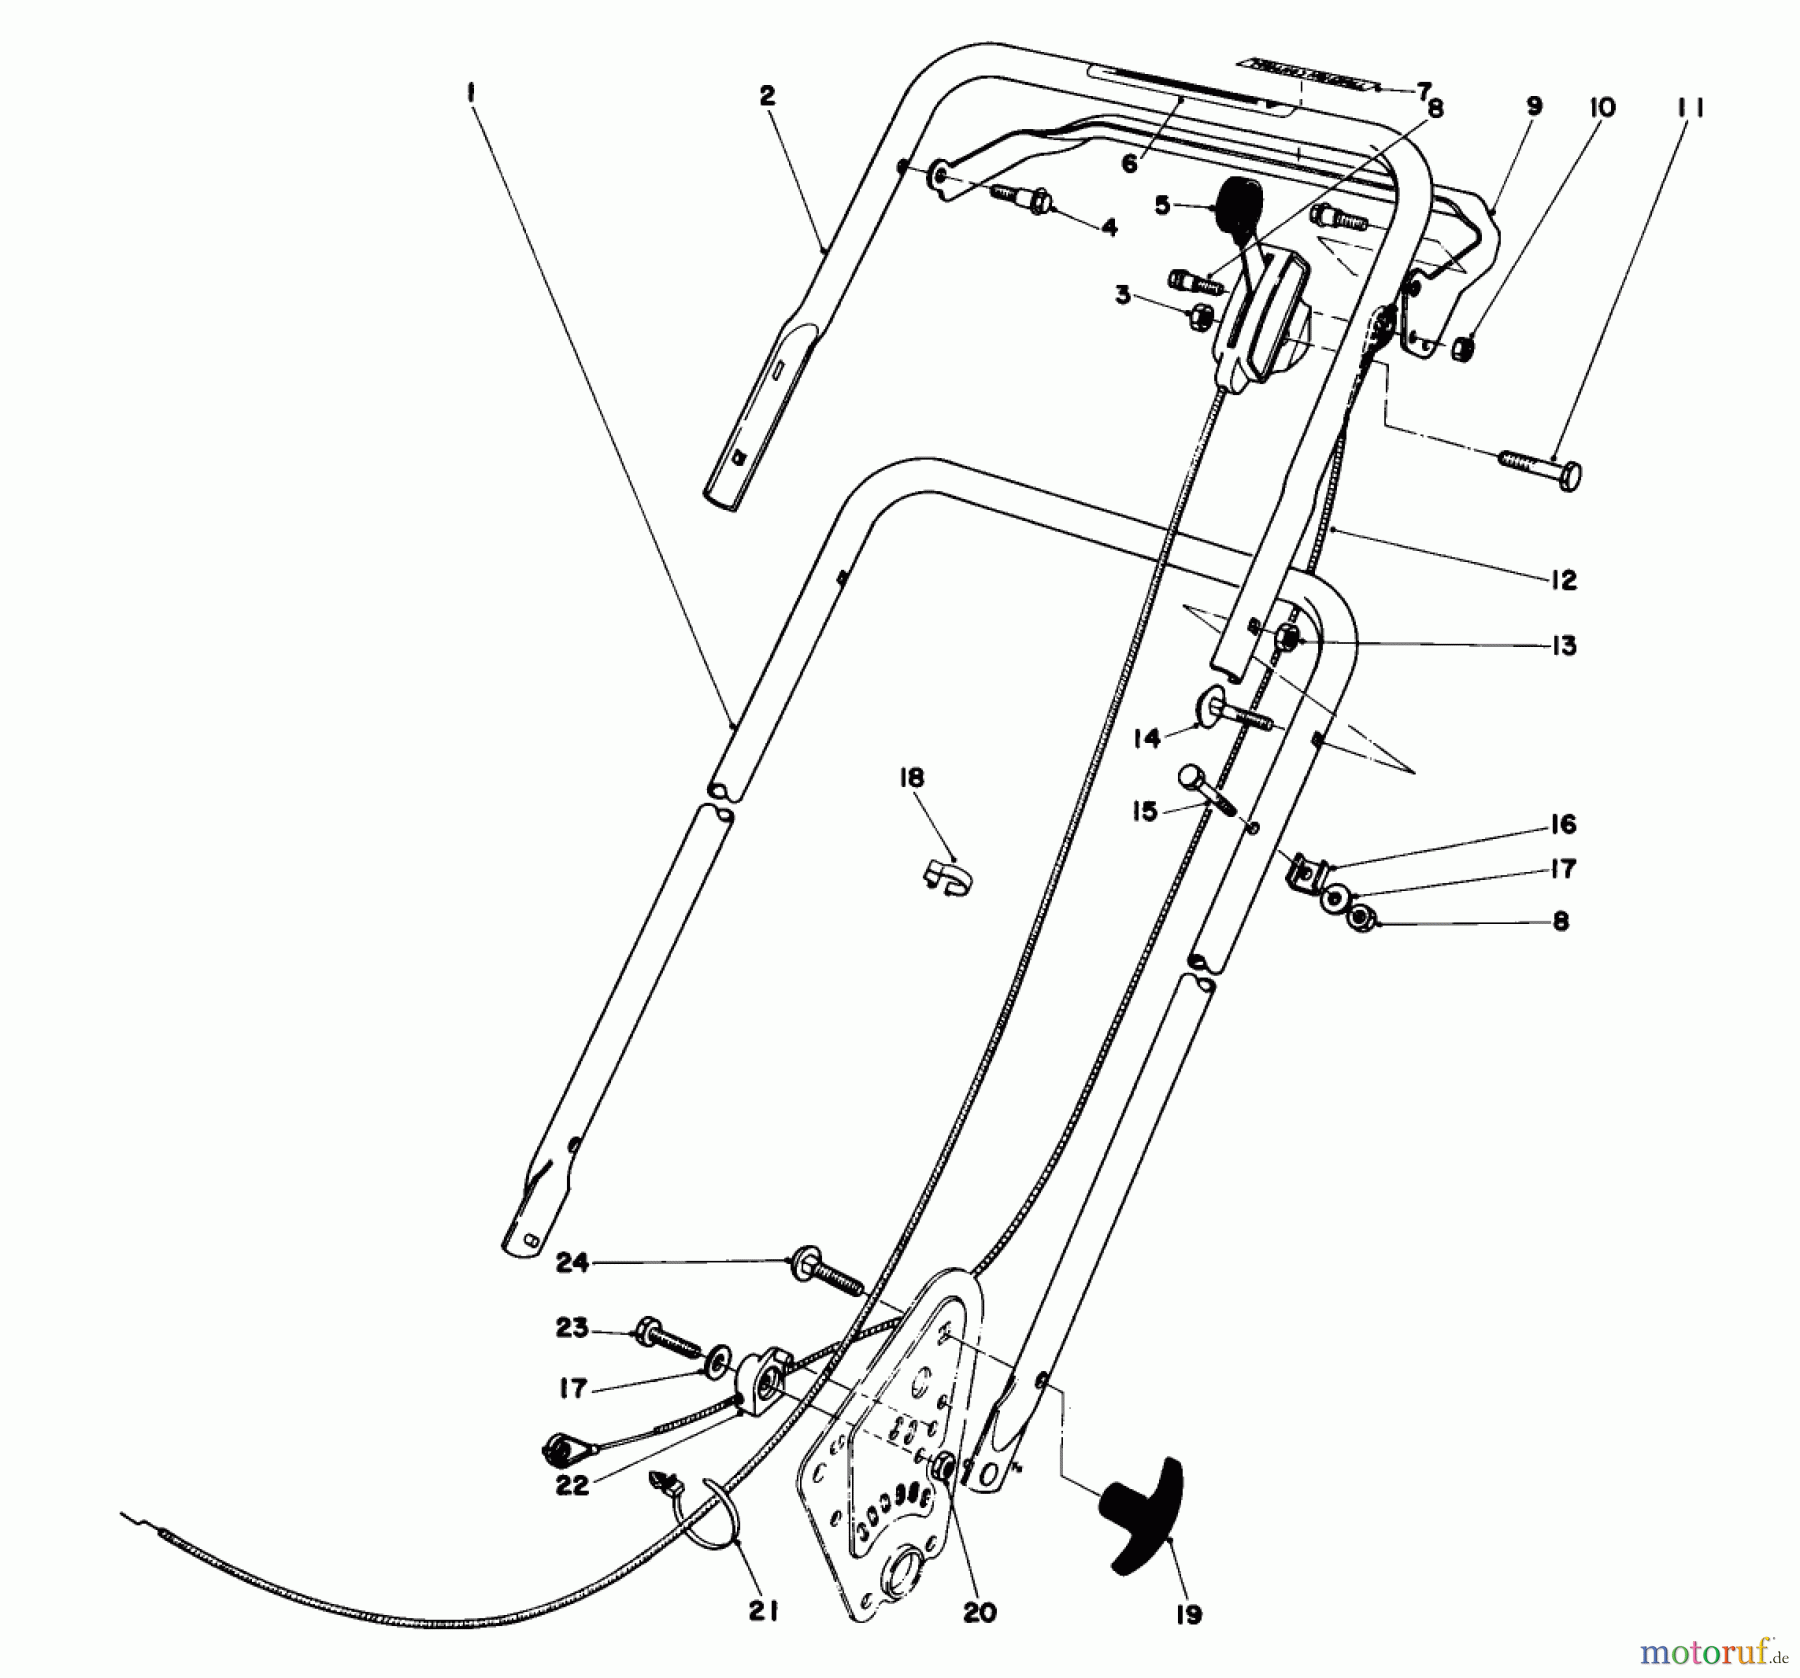  Toro Neu Mowers, Walk-Behind Seite 1 16880 - Toro Lawnmower, 1981 (1000001-1999999) HANDLE ASSEMBLY (MODEL NO. 16890)